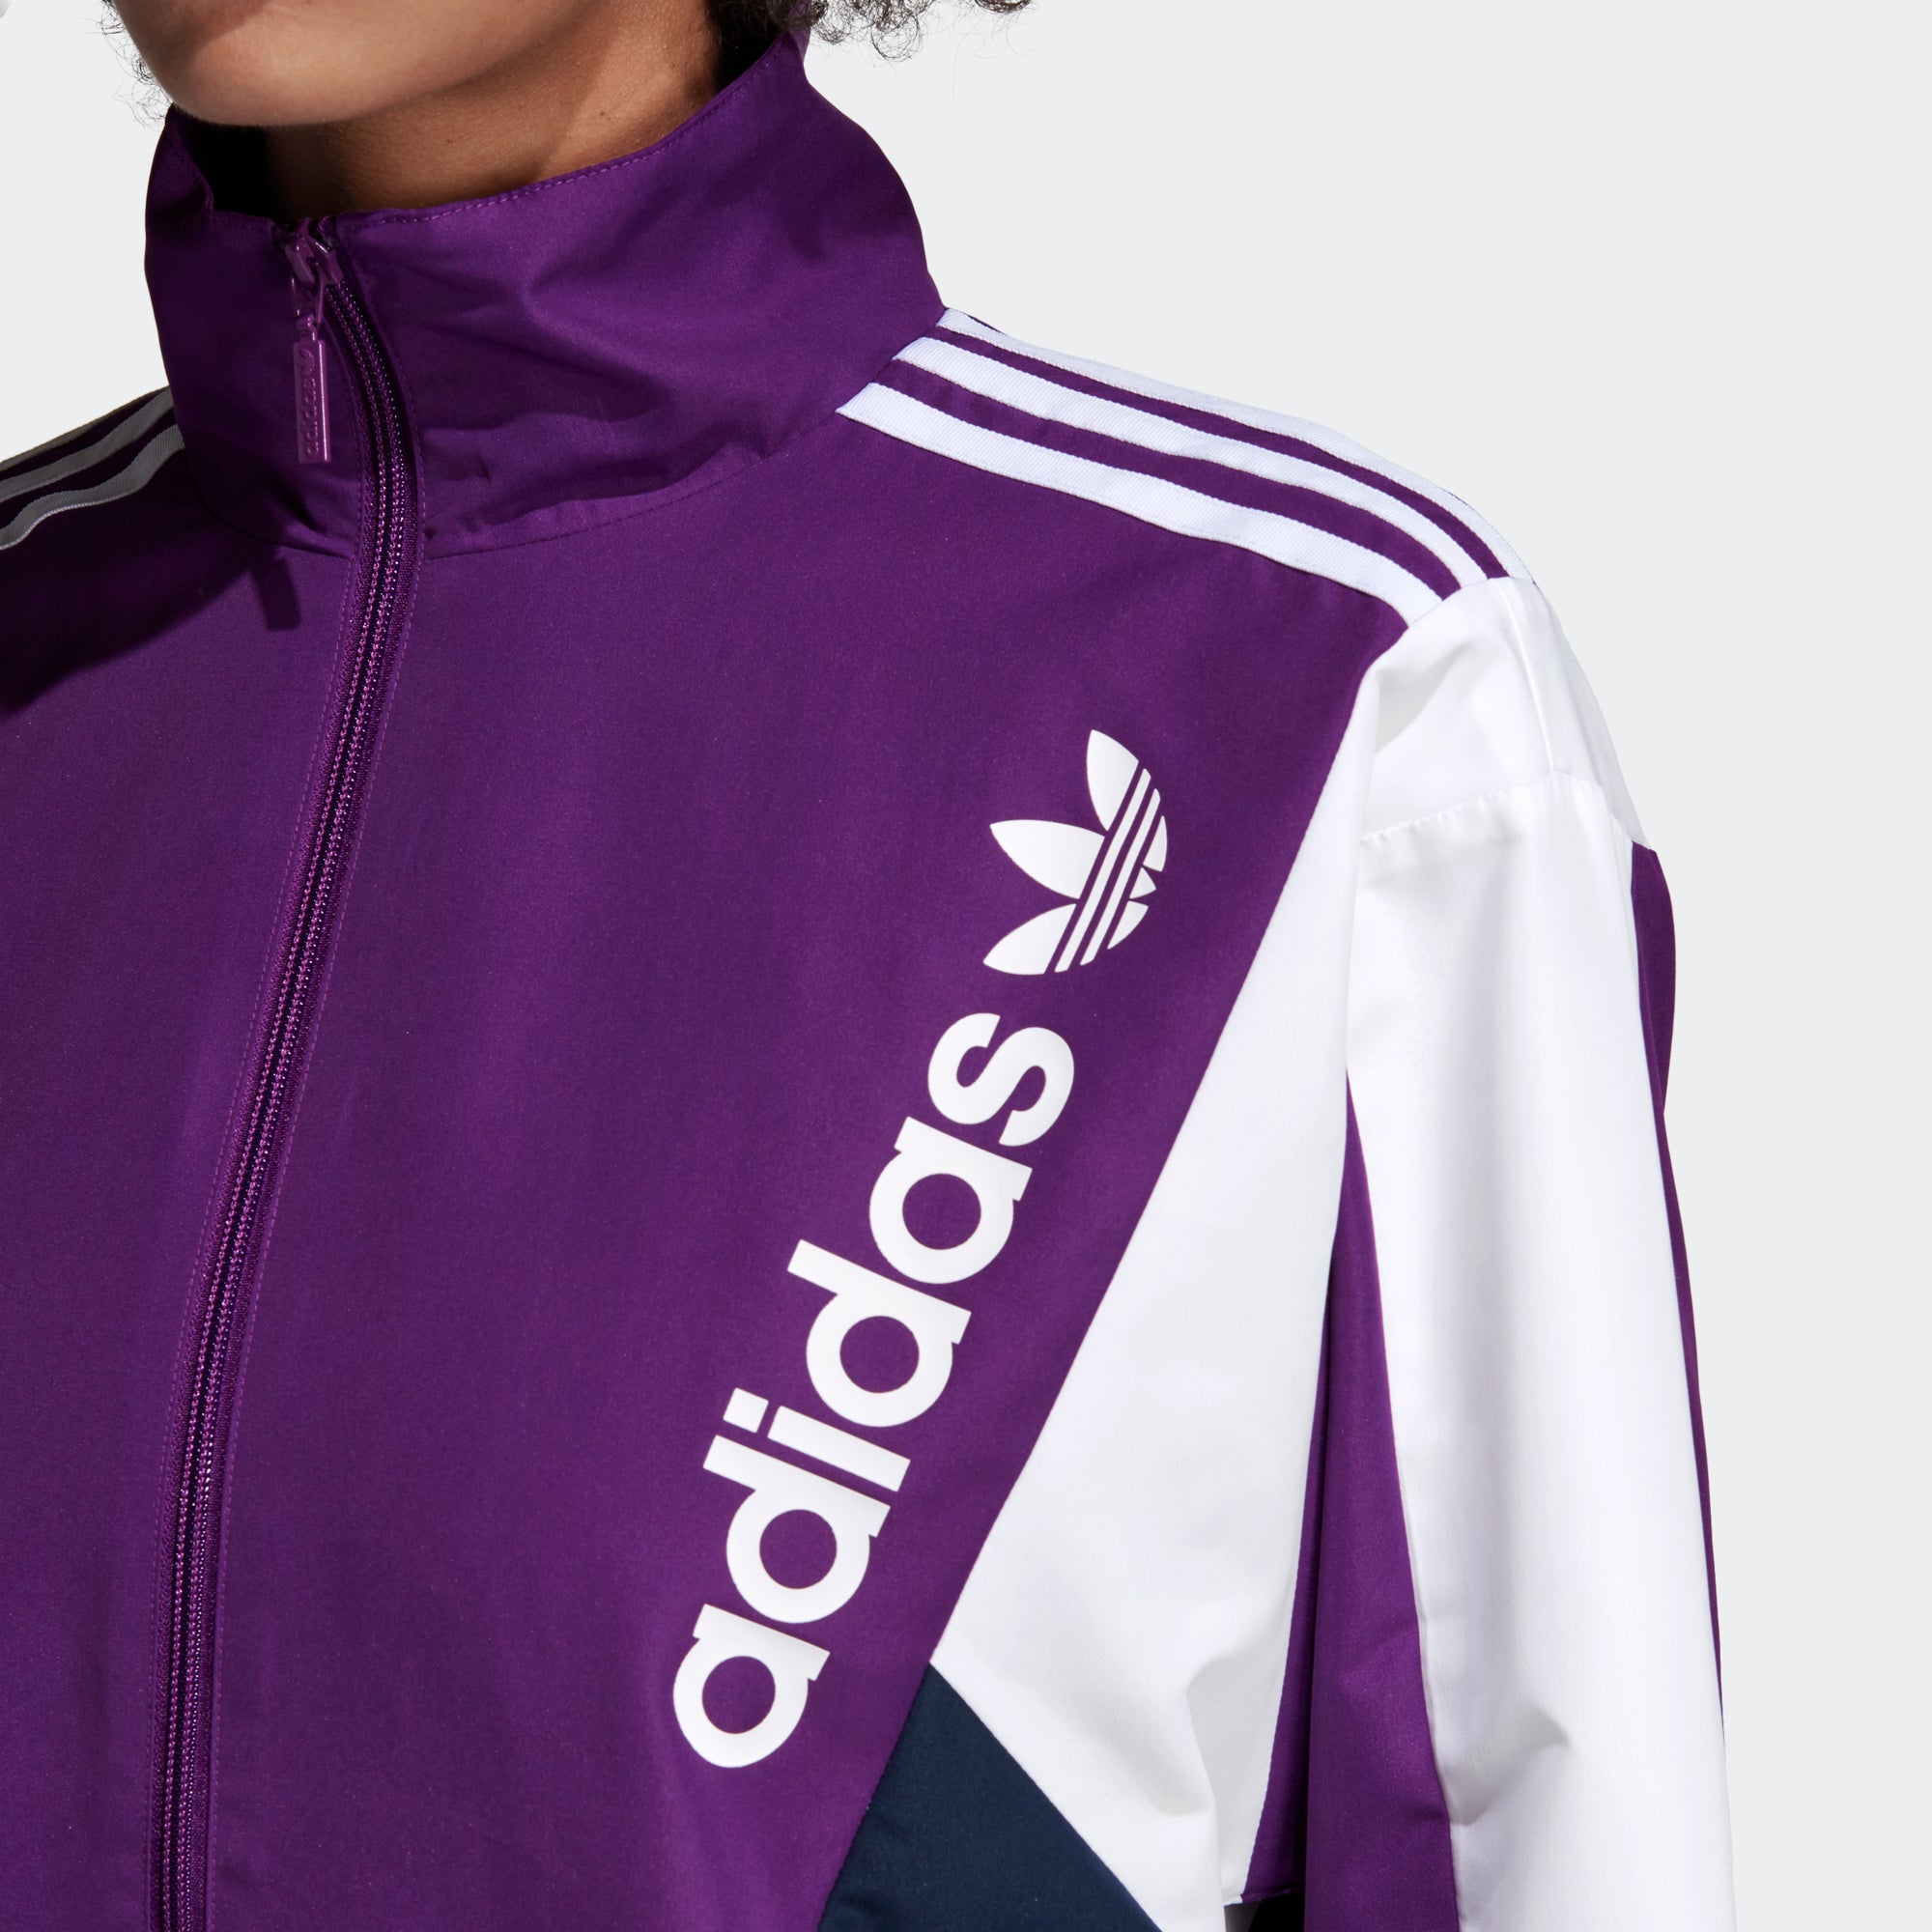 purple addidas jacket